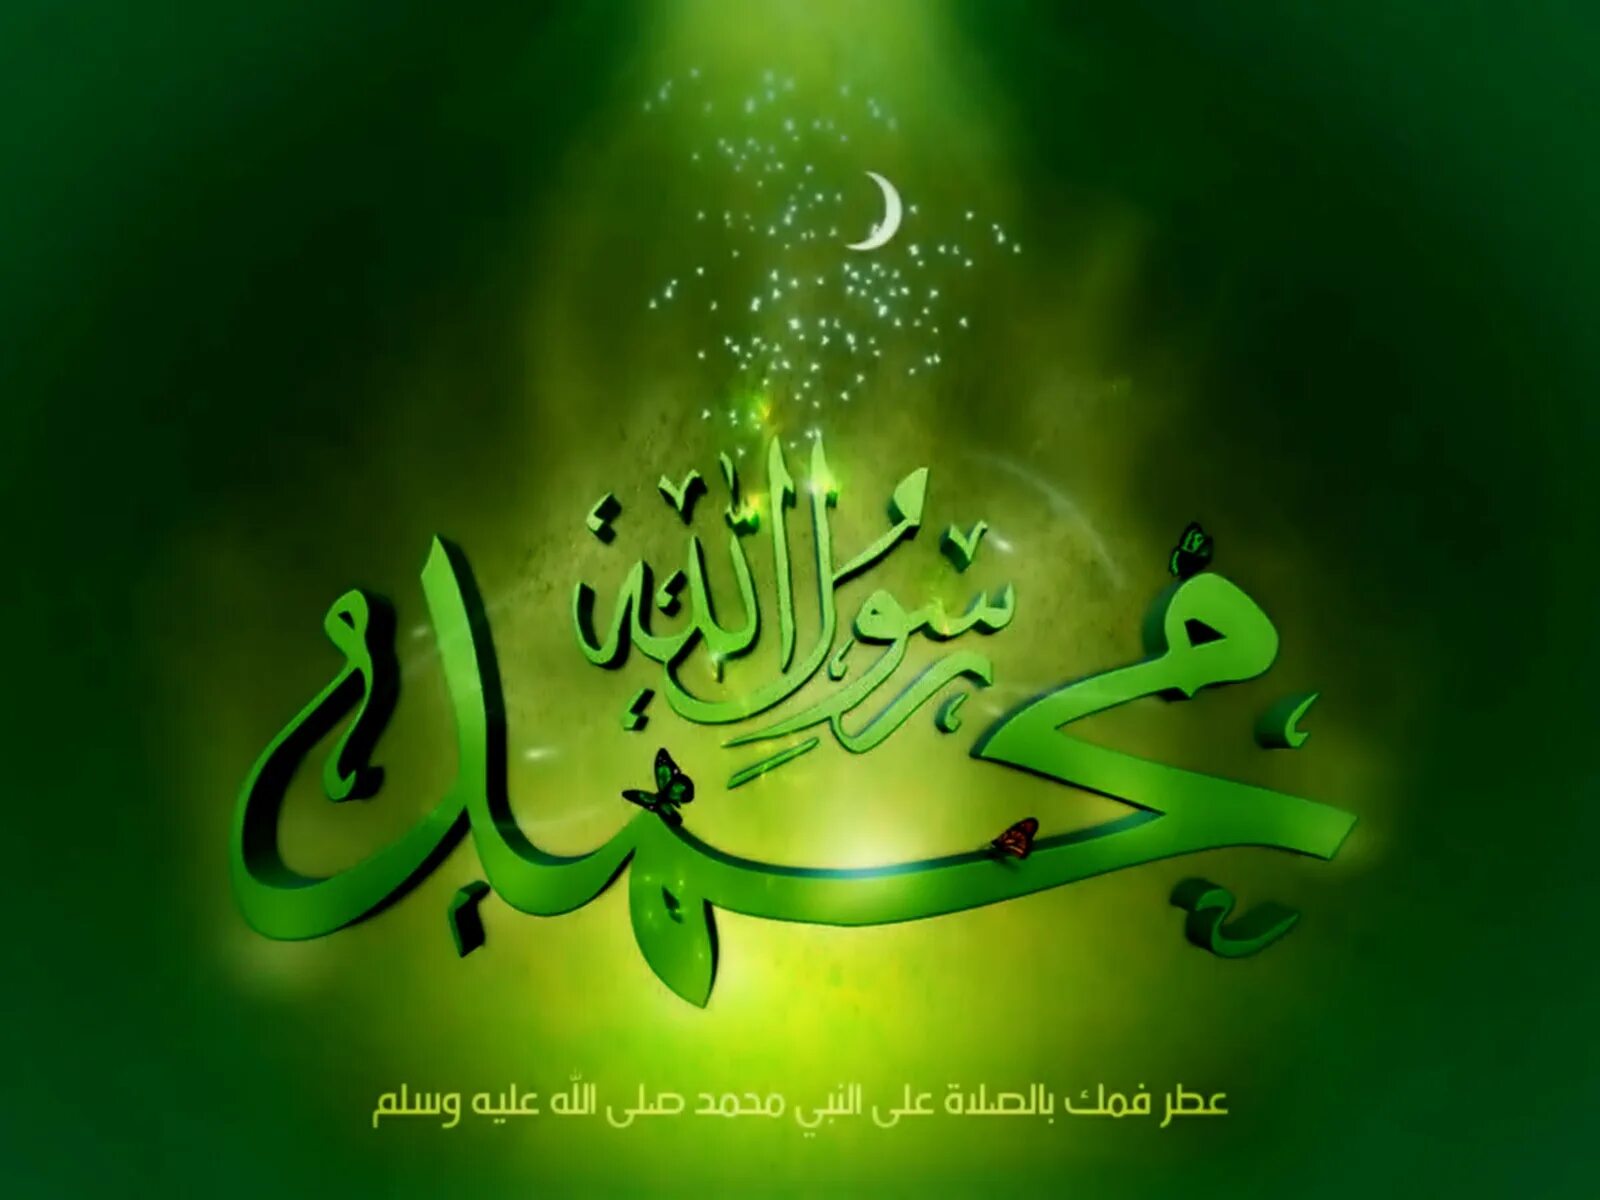 Мухаммед пророк на арабском. Мухаммад на арабском языке. Имя пророка Мухаммеда на арабском. Пророк Мухаммед надпись на арабском.